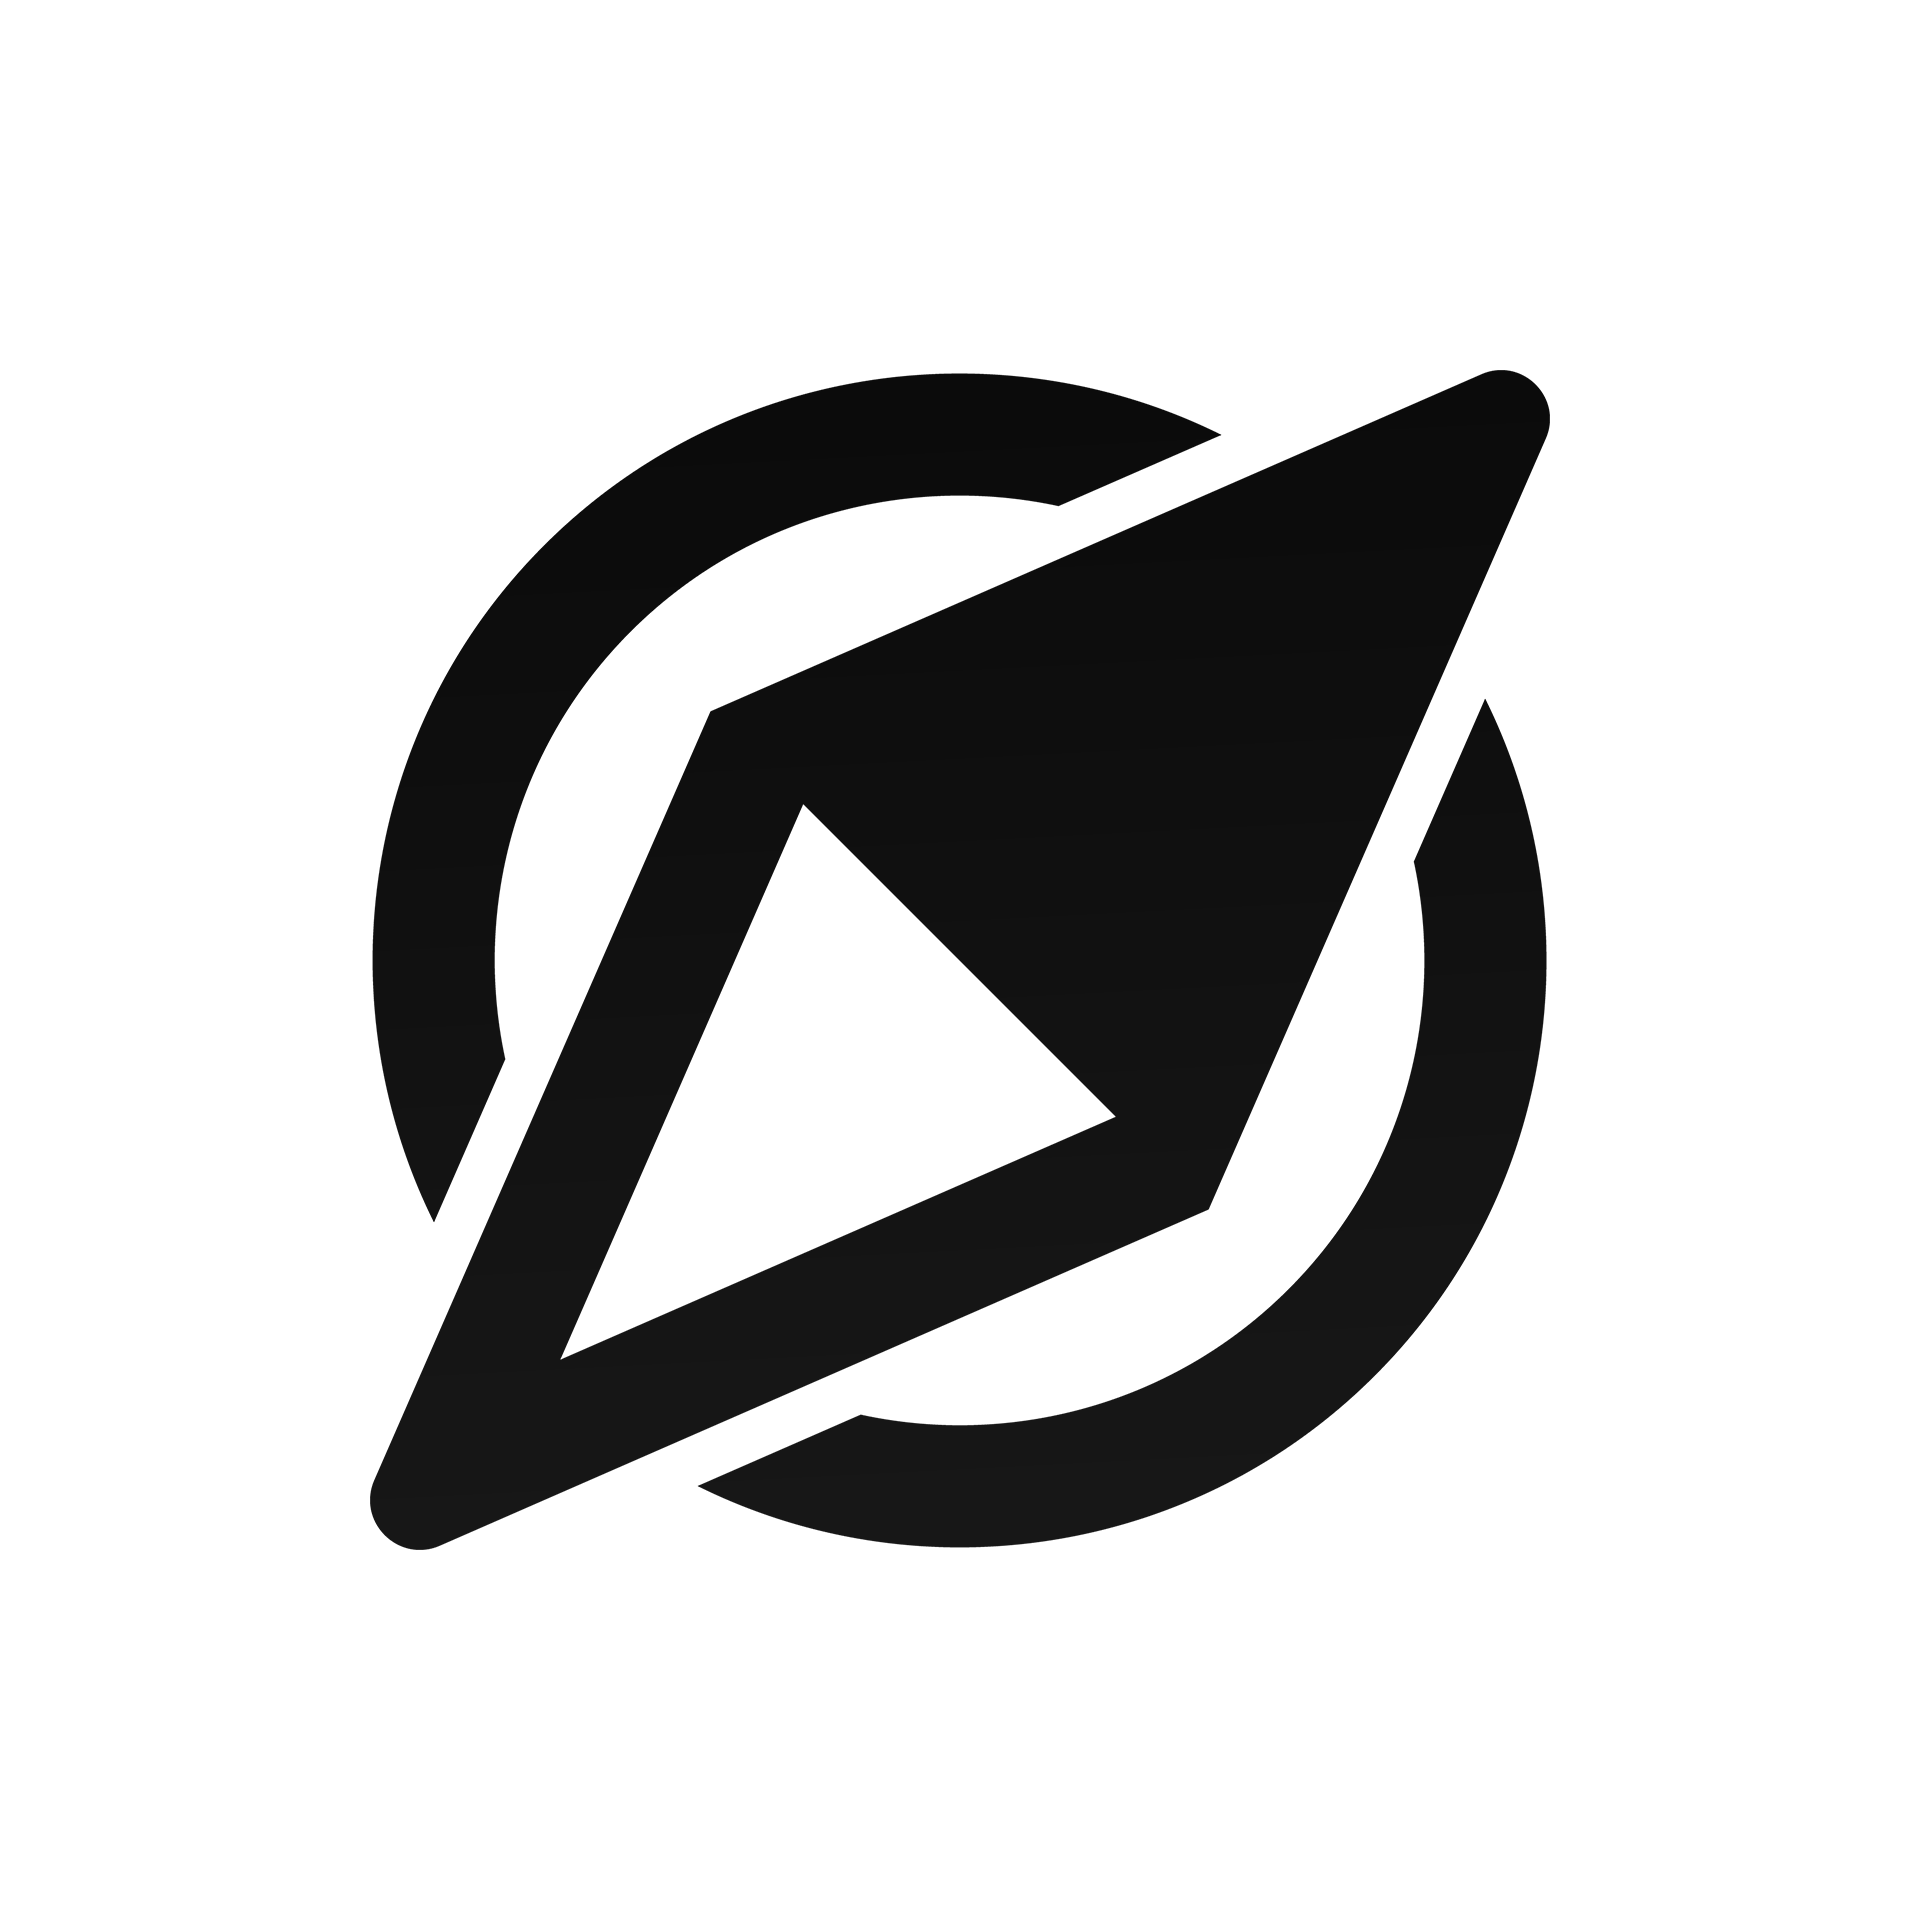 Wevise logo